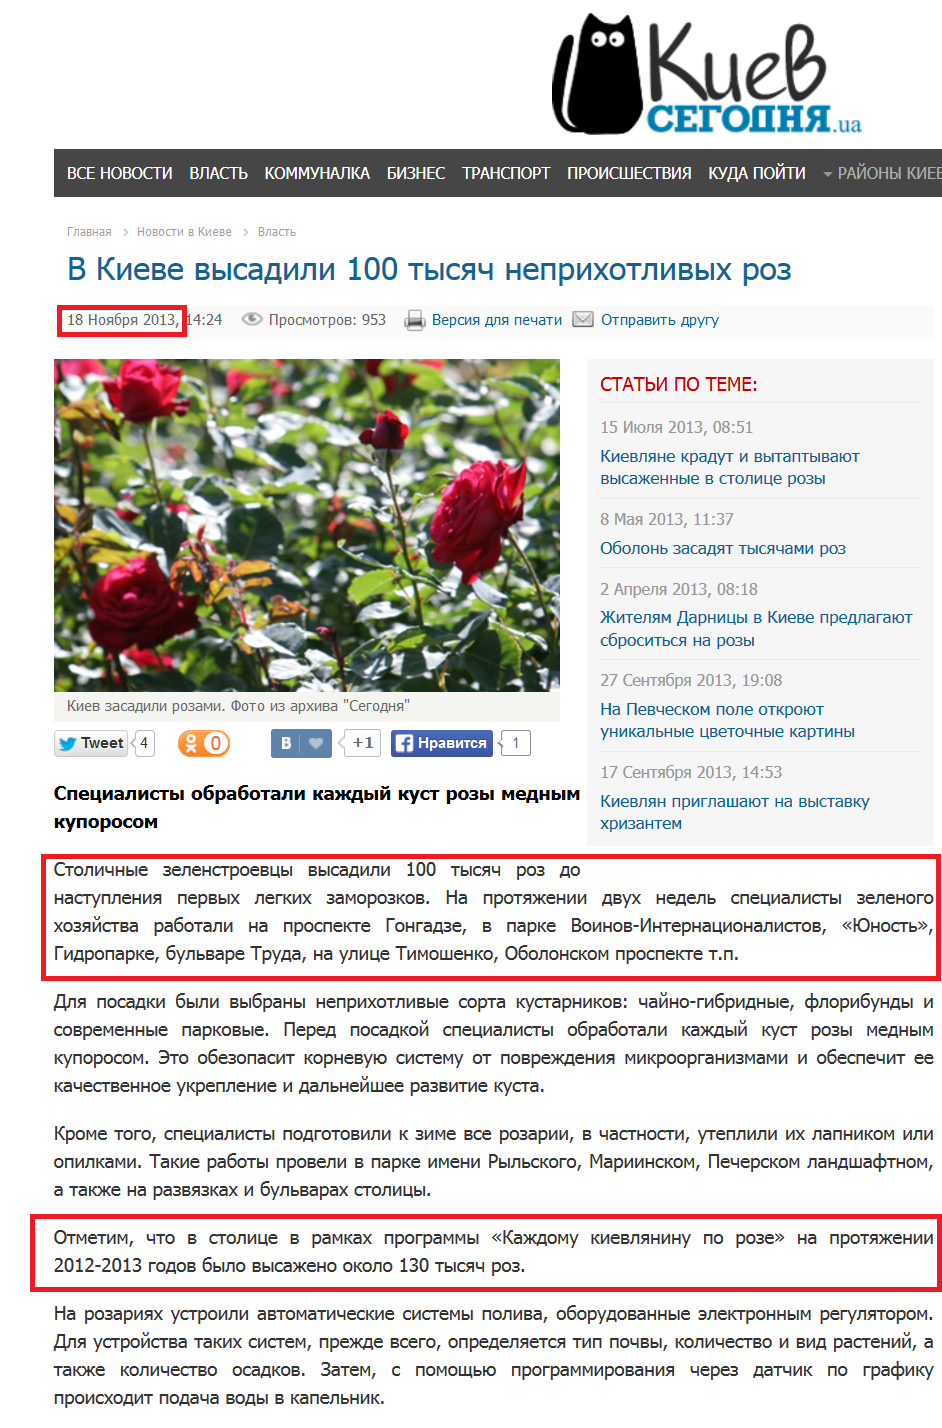 http://kiev.segodnya.ua/kpower/v-kieve-vysadili-100-tysyach-neprihotlivyh-roz-475903.html